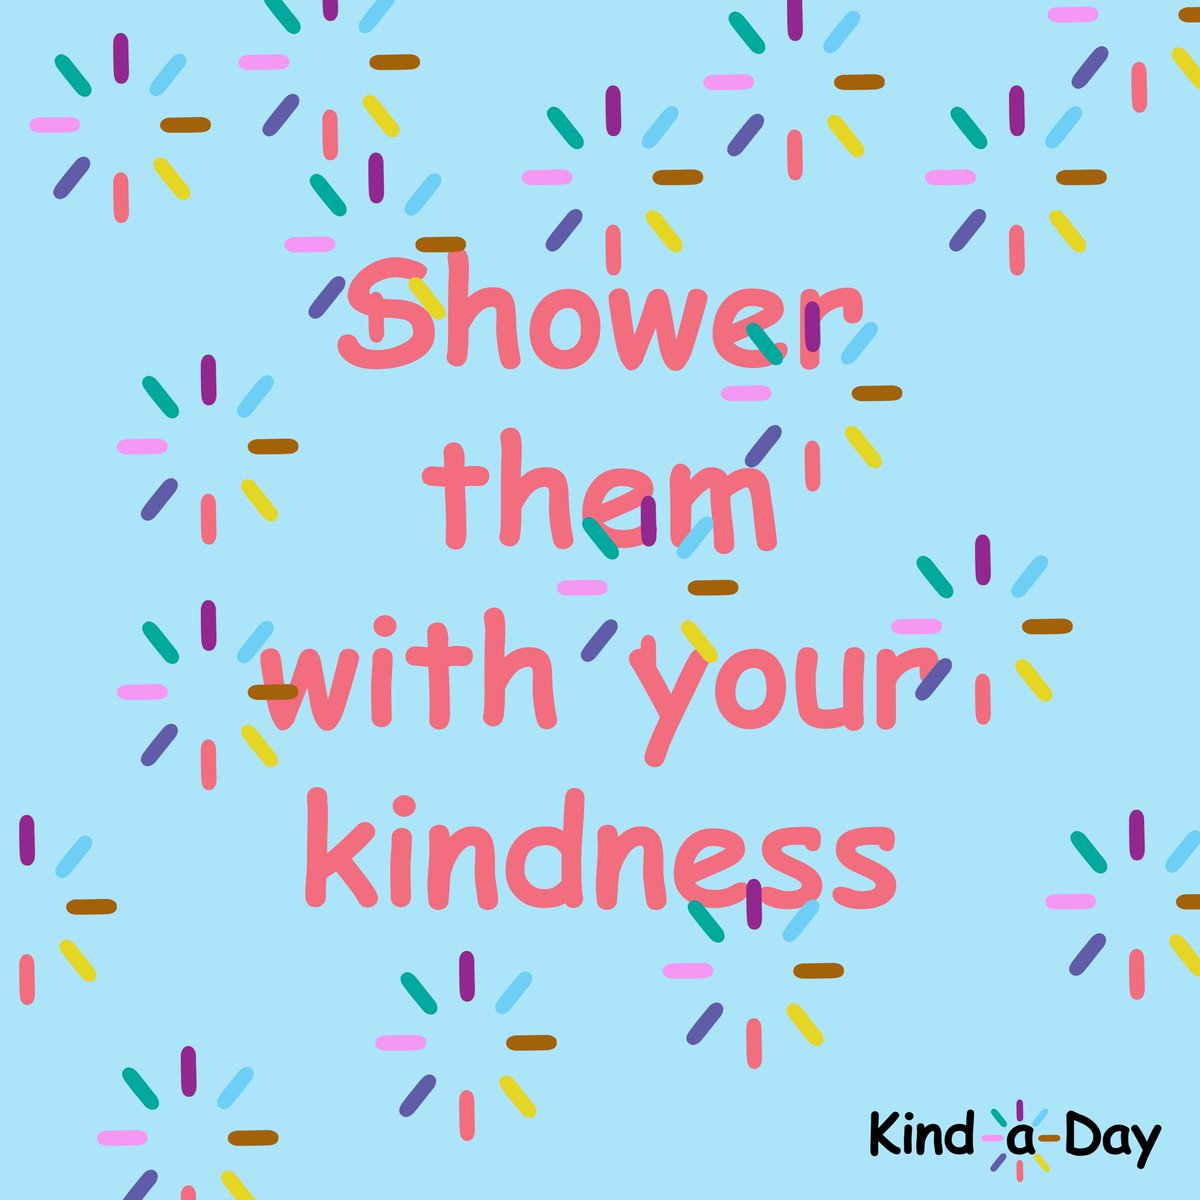 Shower them with your kindness 💕
 
#kind #ShowKindness #ShowerWithKindness #ShowerWithLove #Love #loveandkindness #kindness #KindLife #ActsOfKindness #SpreadKindness #KindnessMatters #ChooseKindness #KindnessWins #KindaDay #KindnessAlways #KindnessEveryday #KindnessChallenge